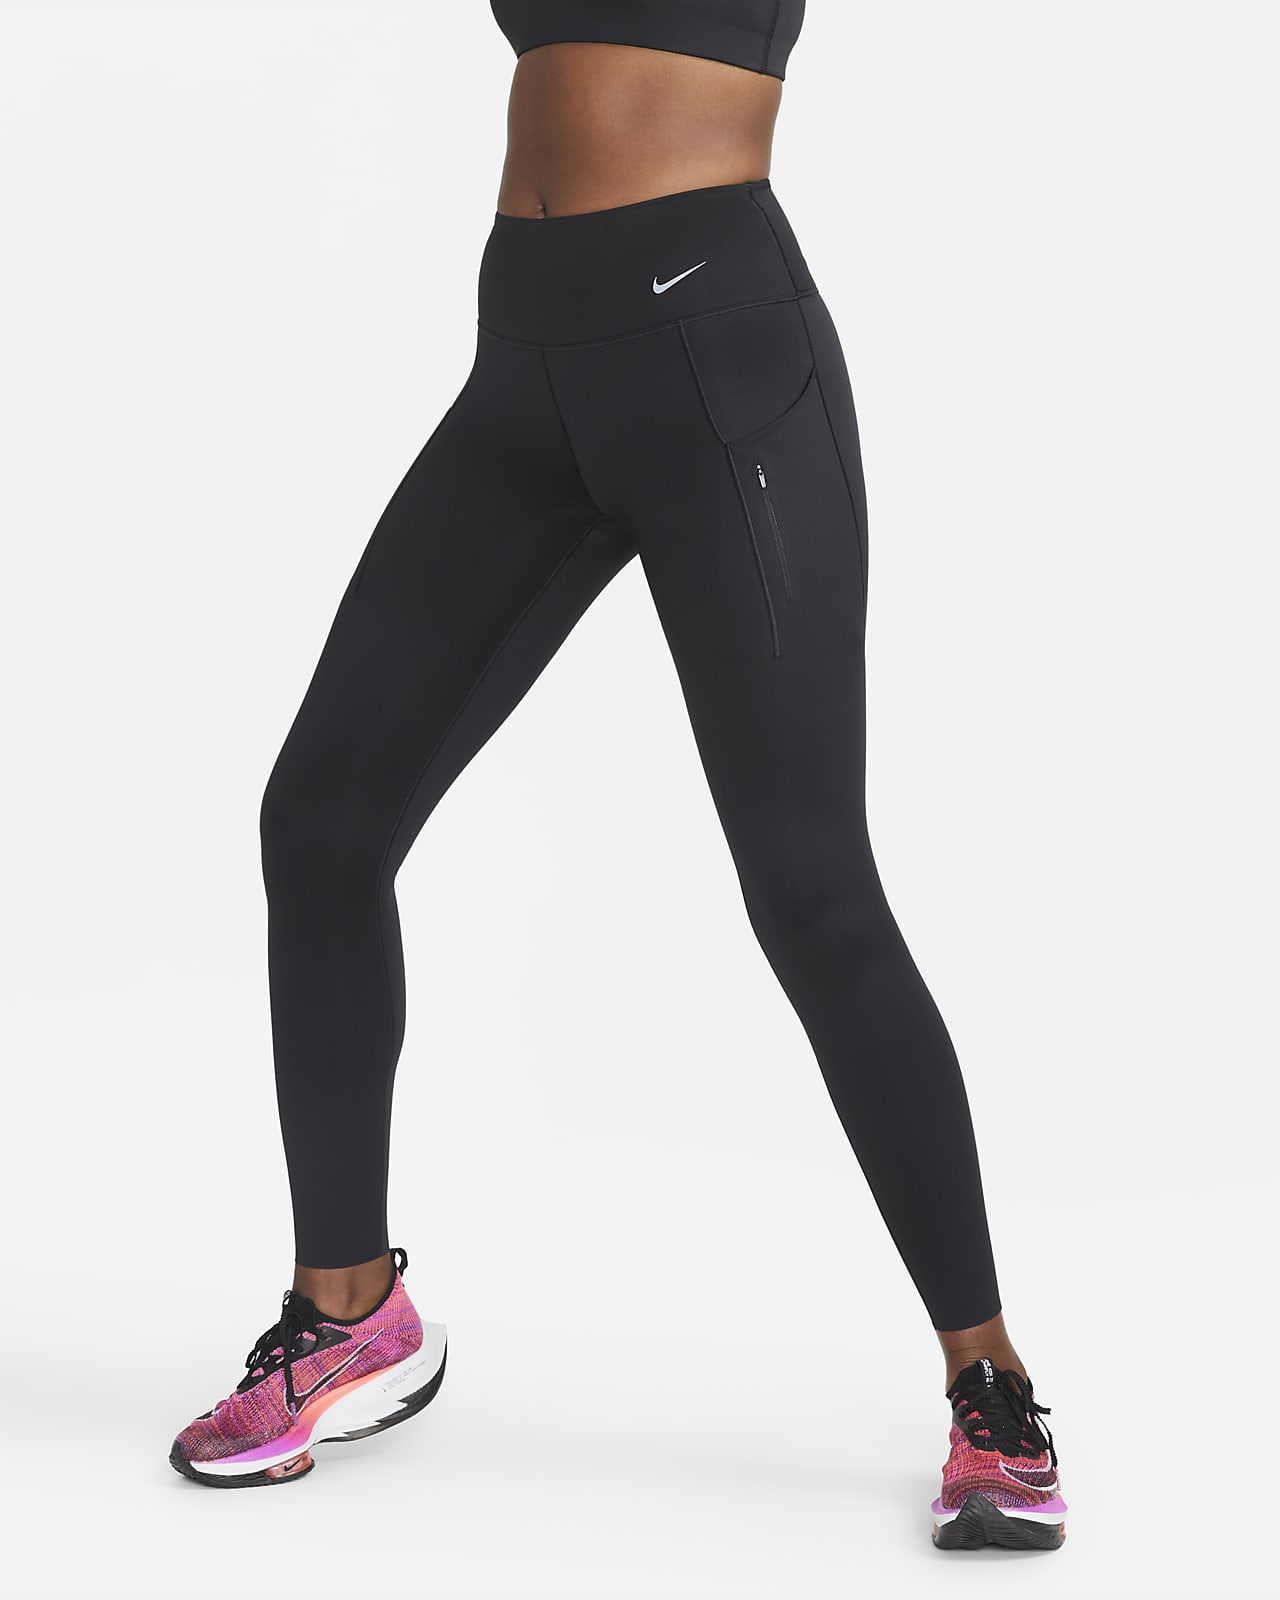 kogel Drama Groenteboer Nike Go Women's Firm-Support Mid-Rise Full-Length Leggings with Pockets.  Nike.com